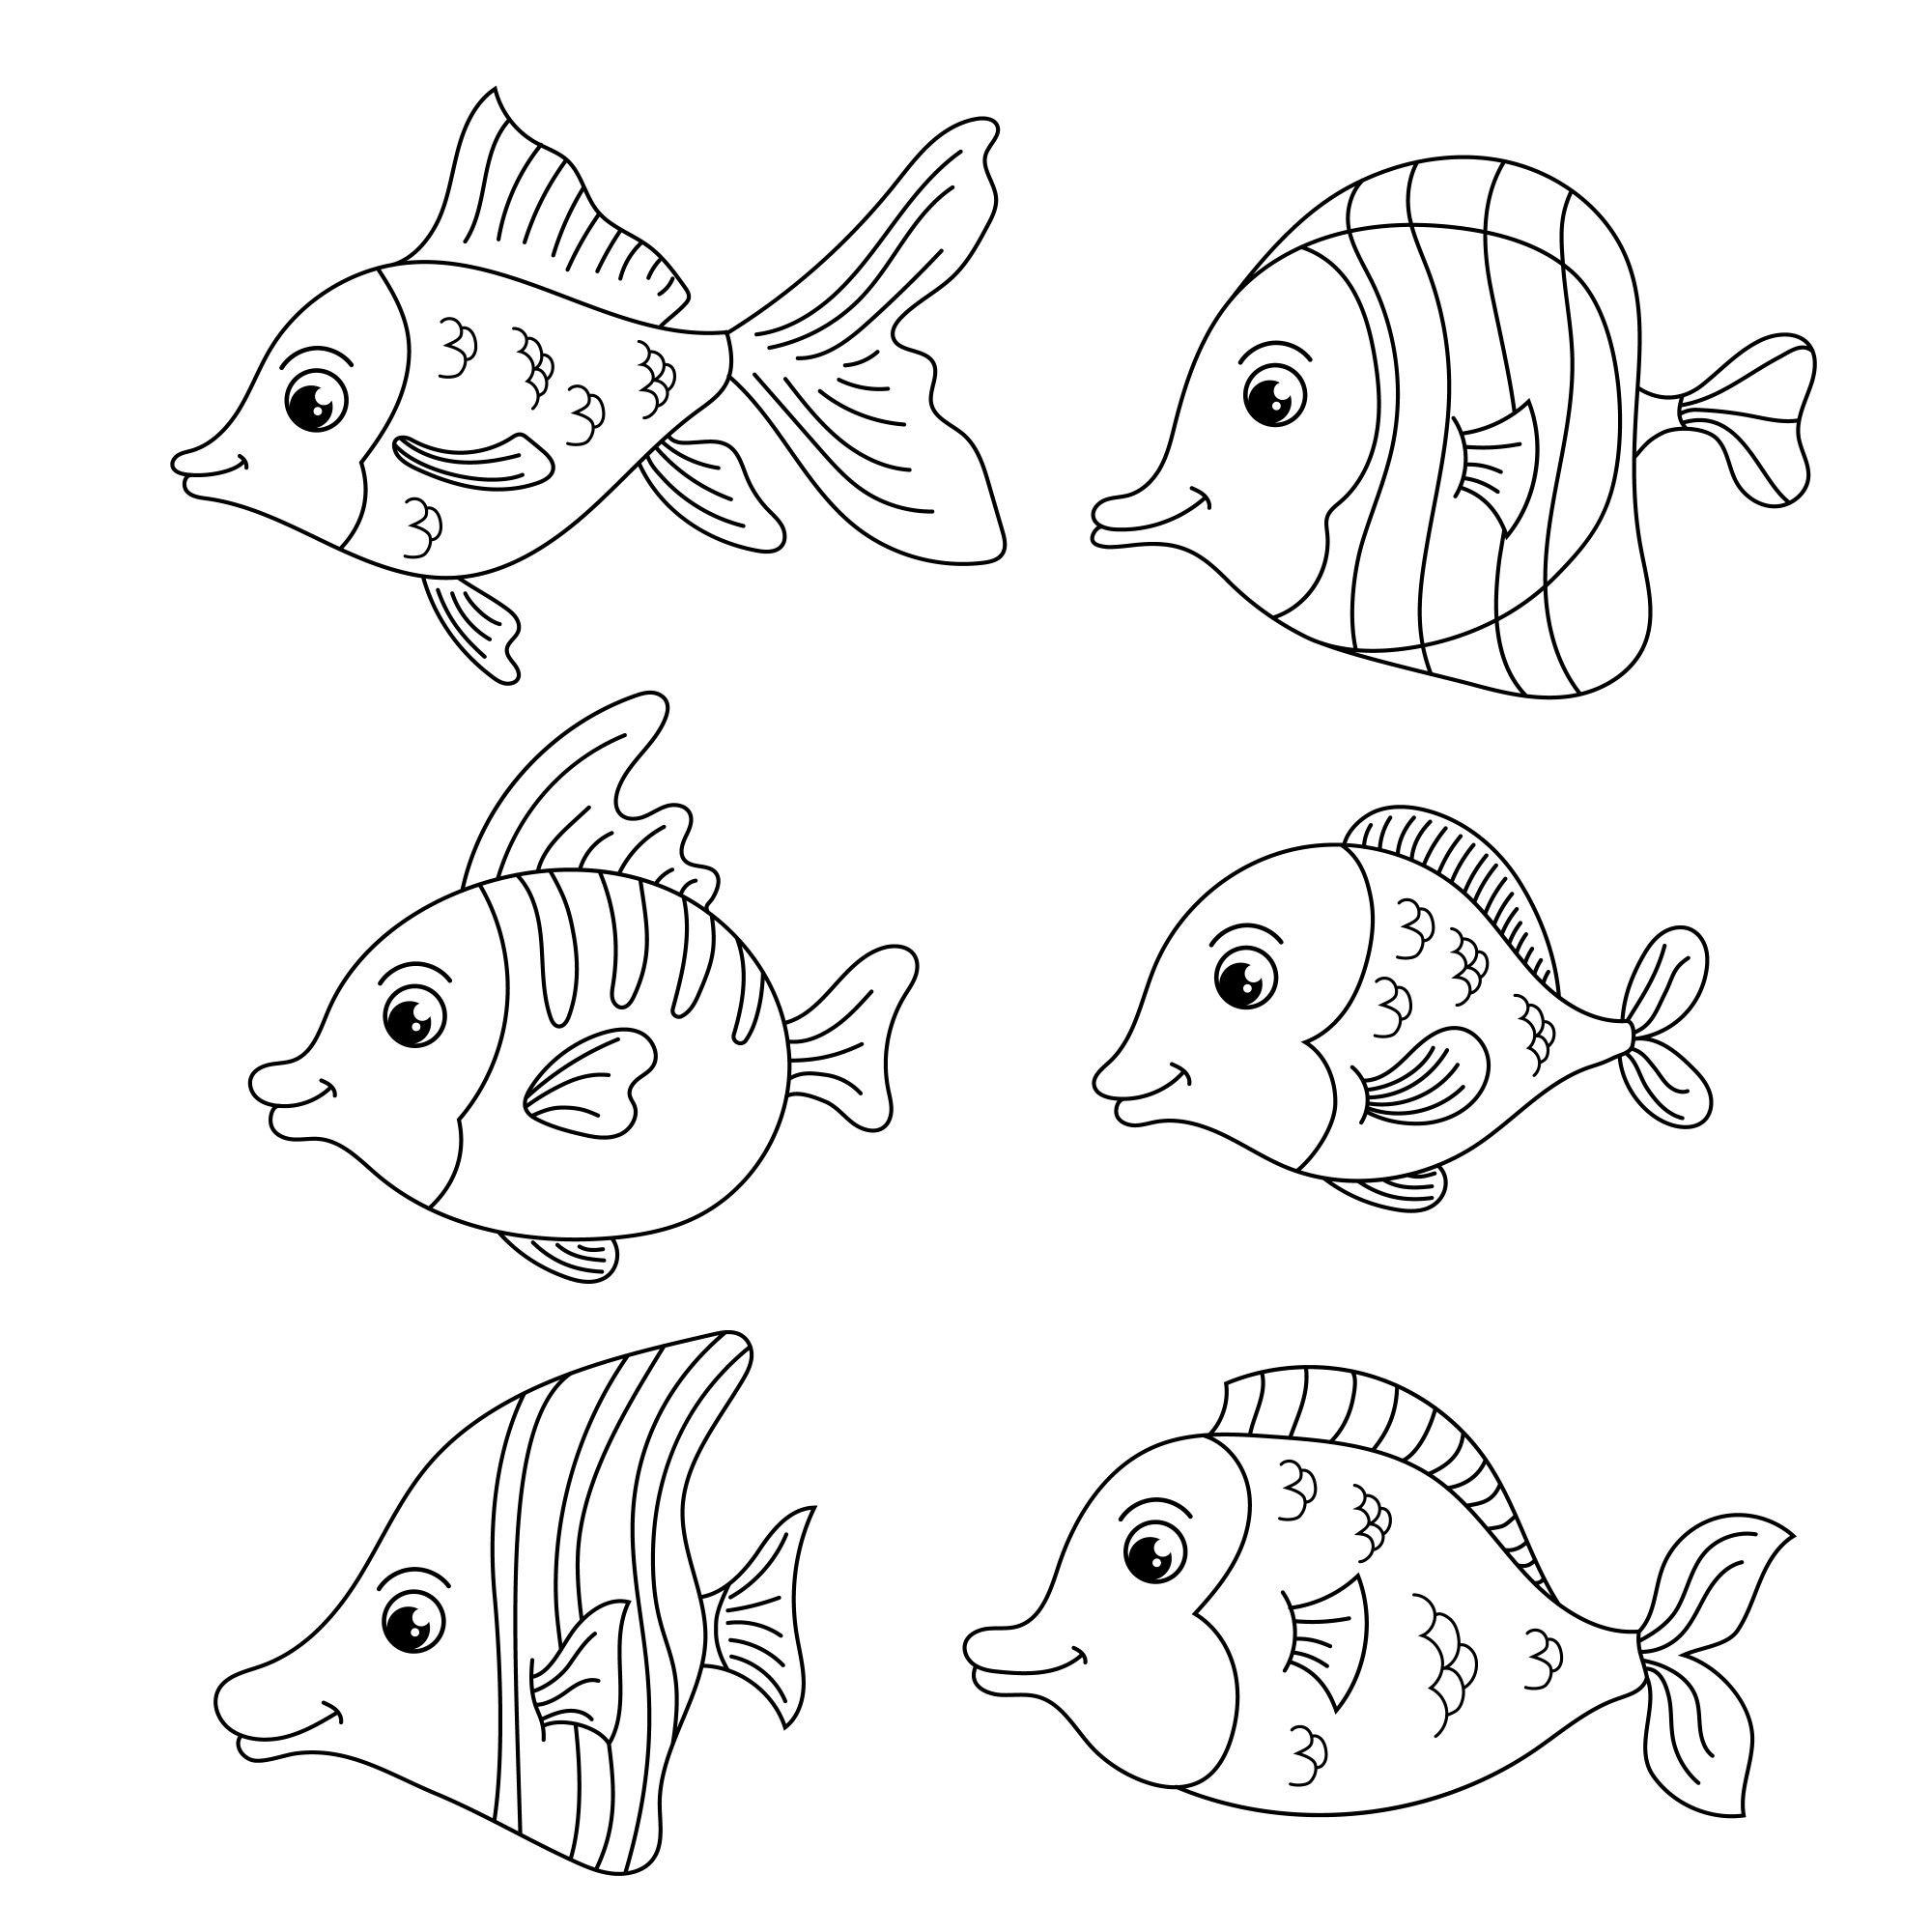 Раскраска для детей: мультяшные рыбки